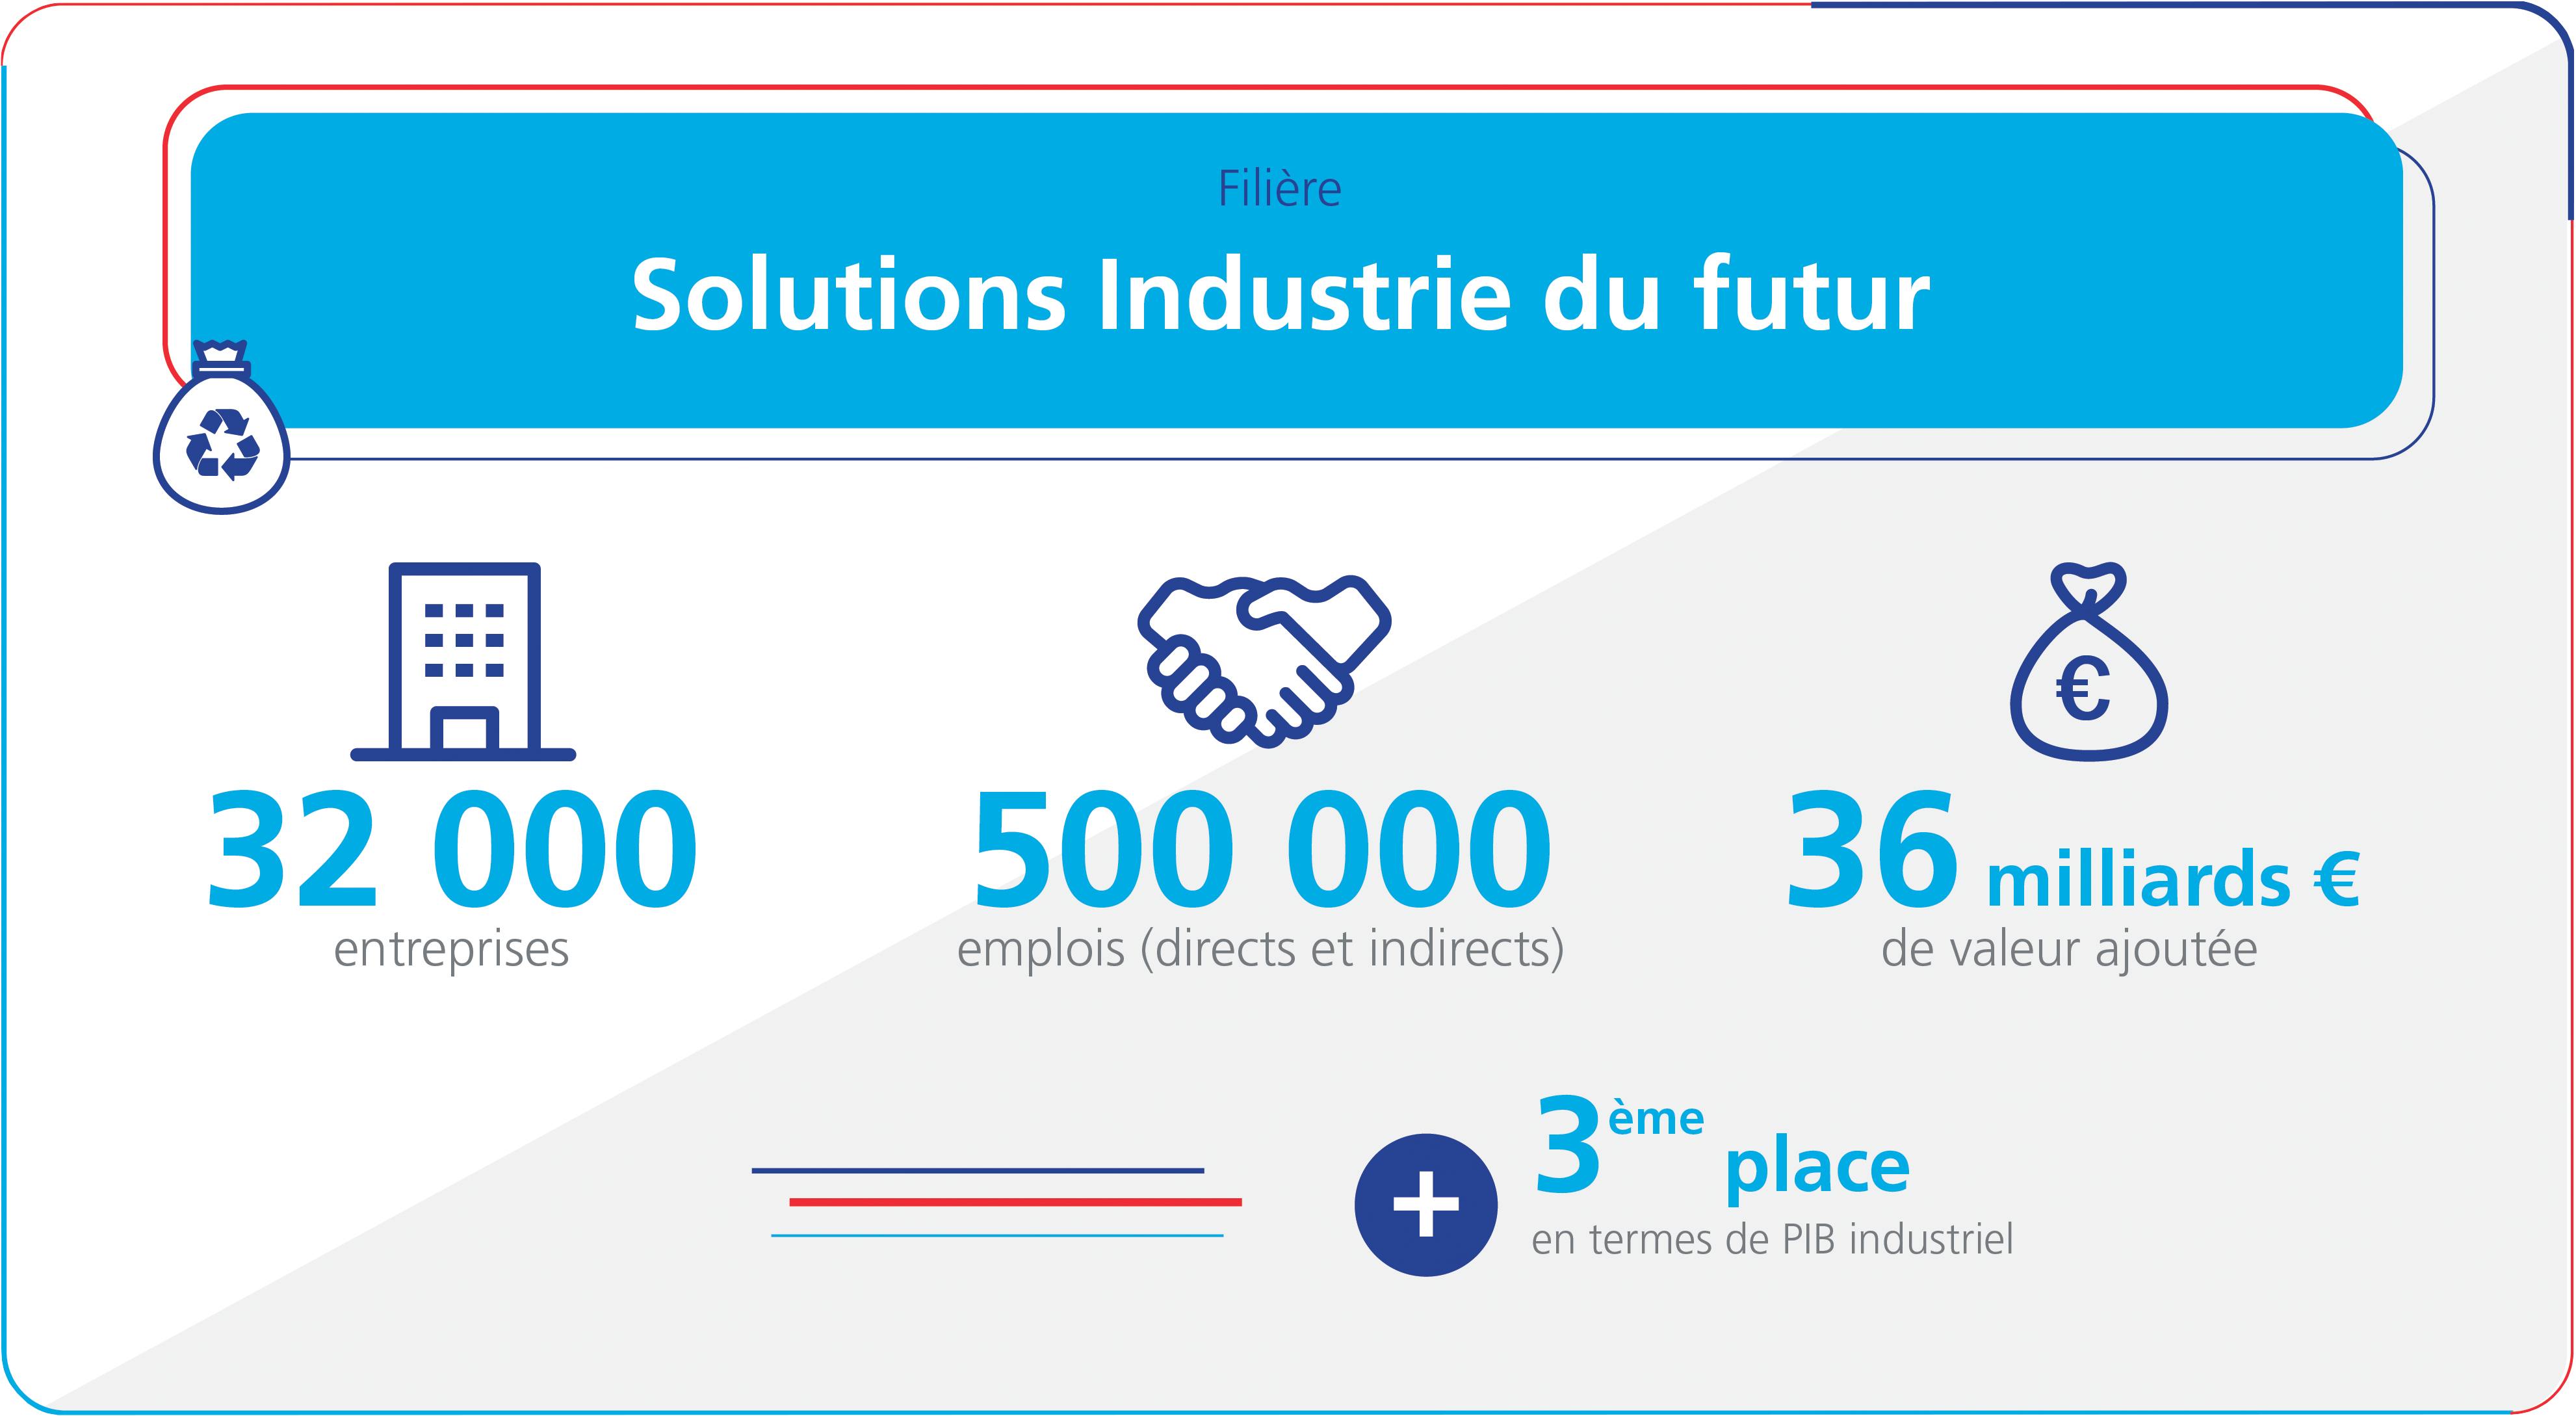 La filière Solutions Industries du futur, c’est :  32000 entreprises  500000 emplois directs et indirects  36 milliards d’euros de valeur ajoutée  troisième place en termes de PIB industriel